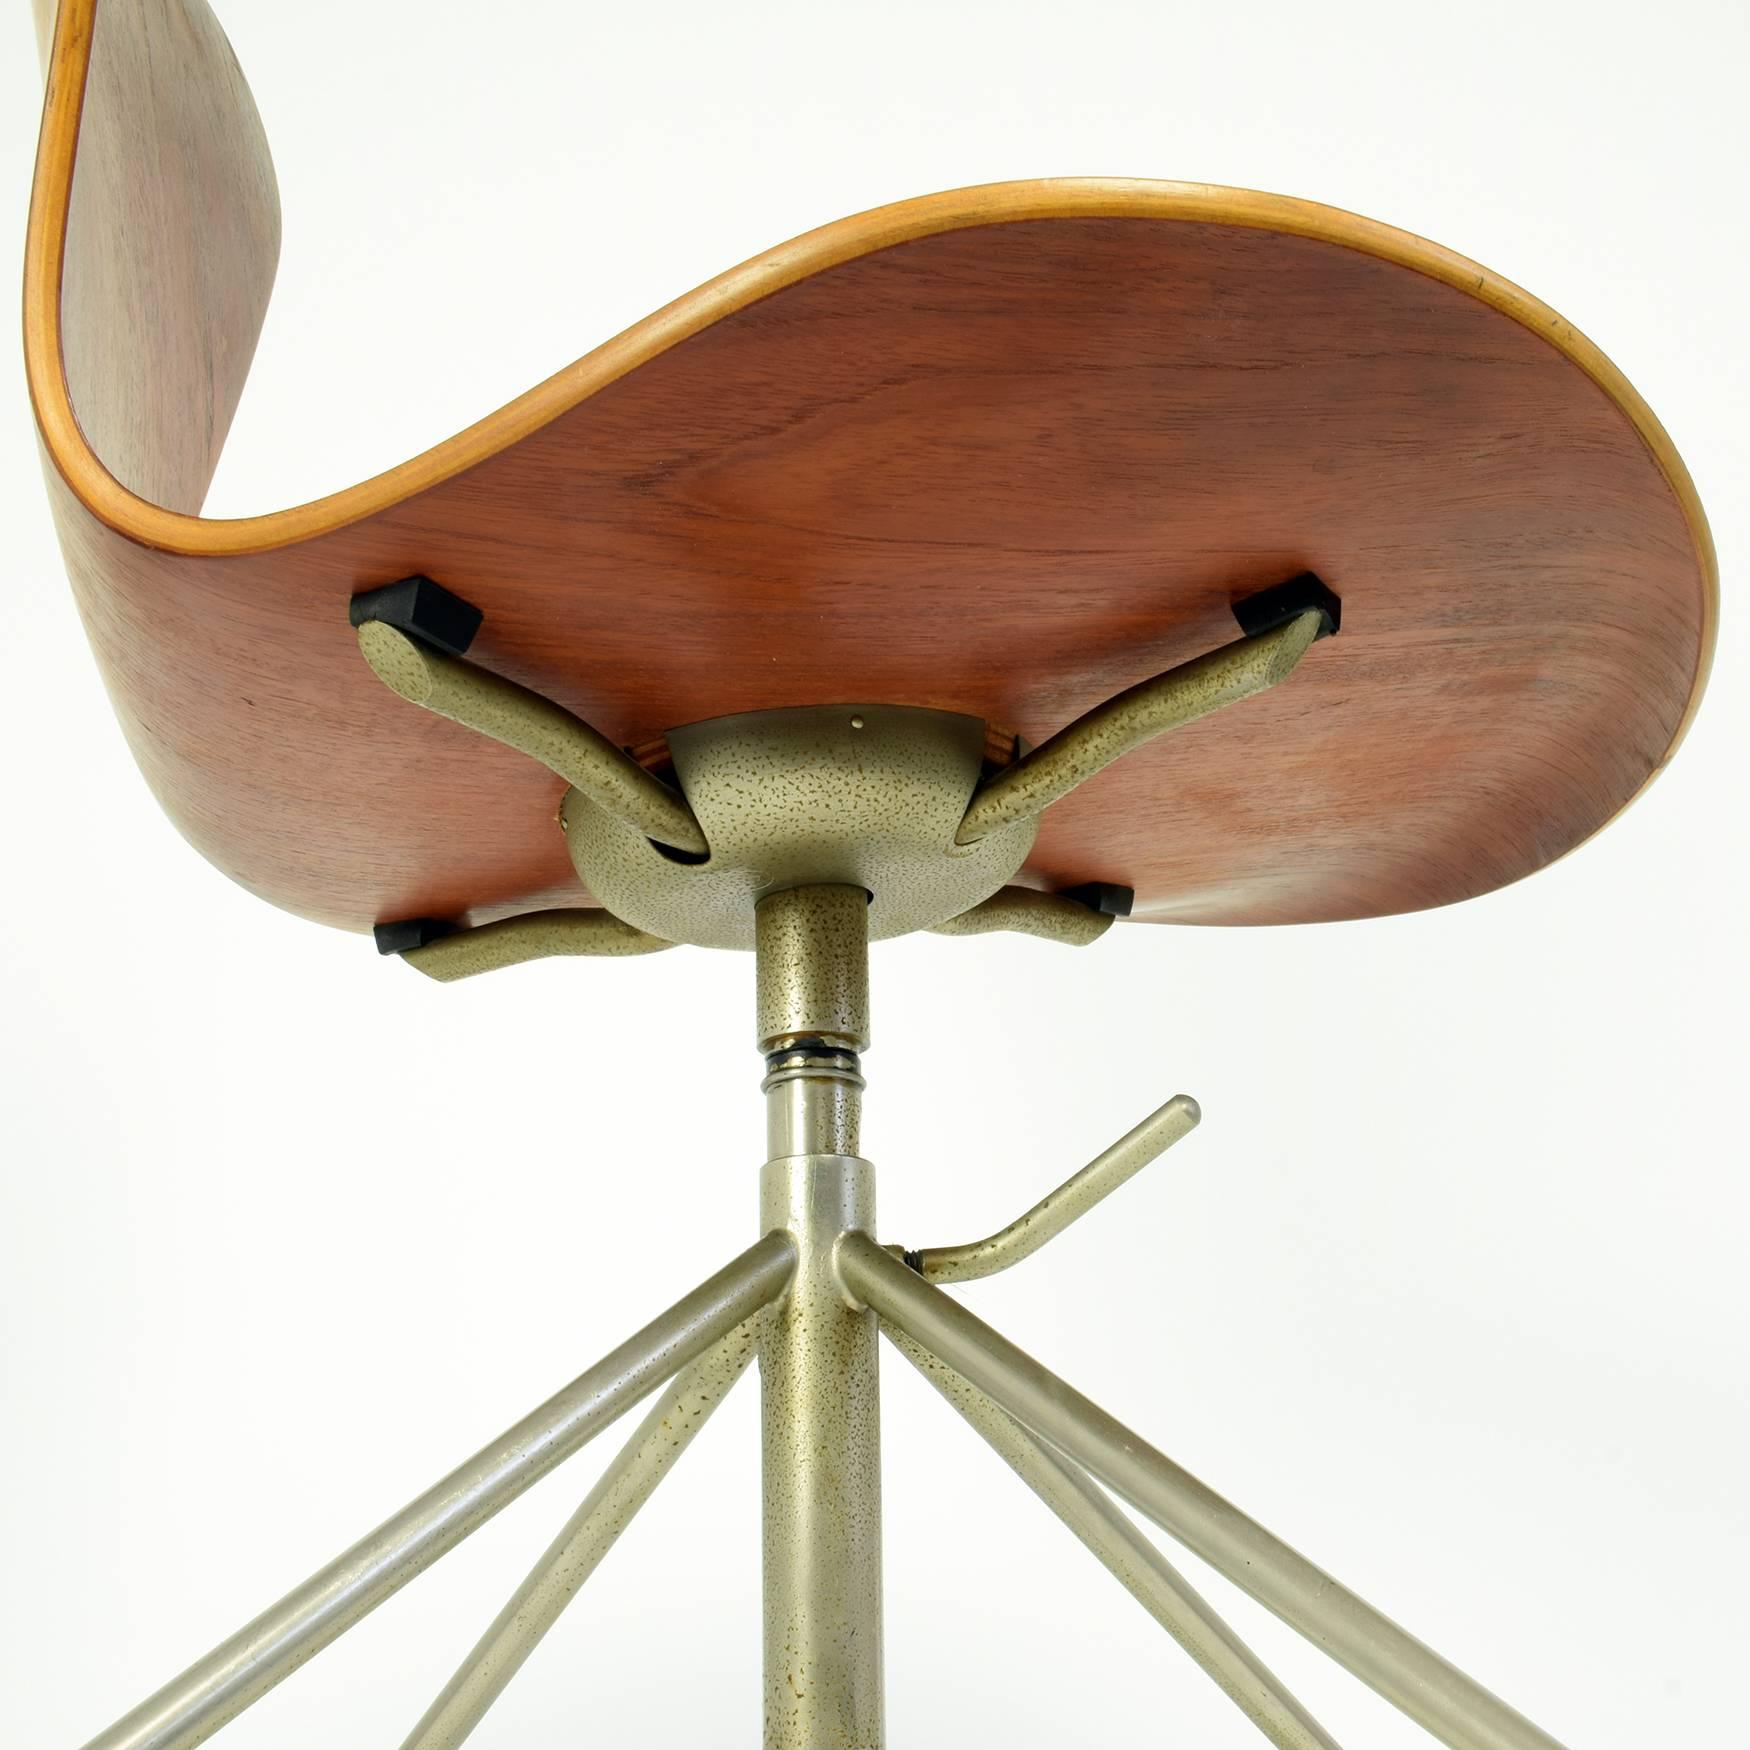 Danish Arne Jacobsen Model 3117 Desk Chair, 1955